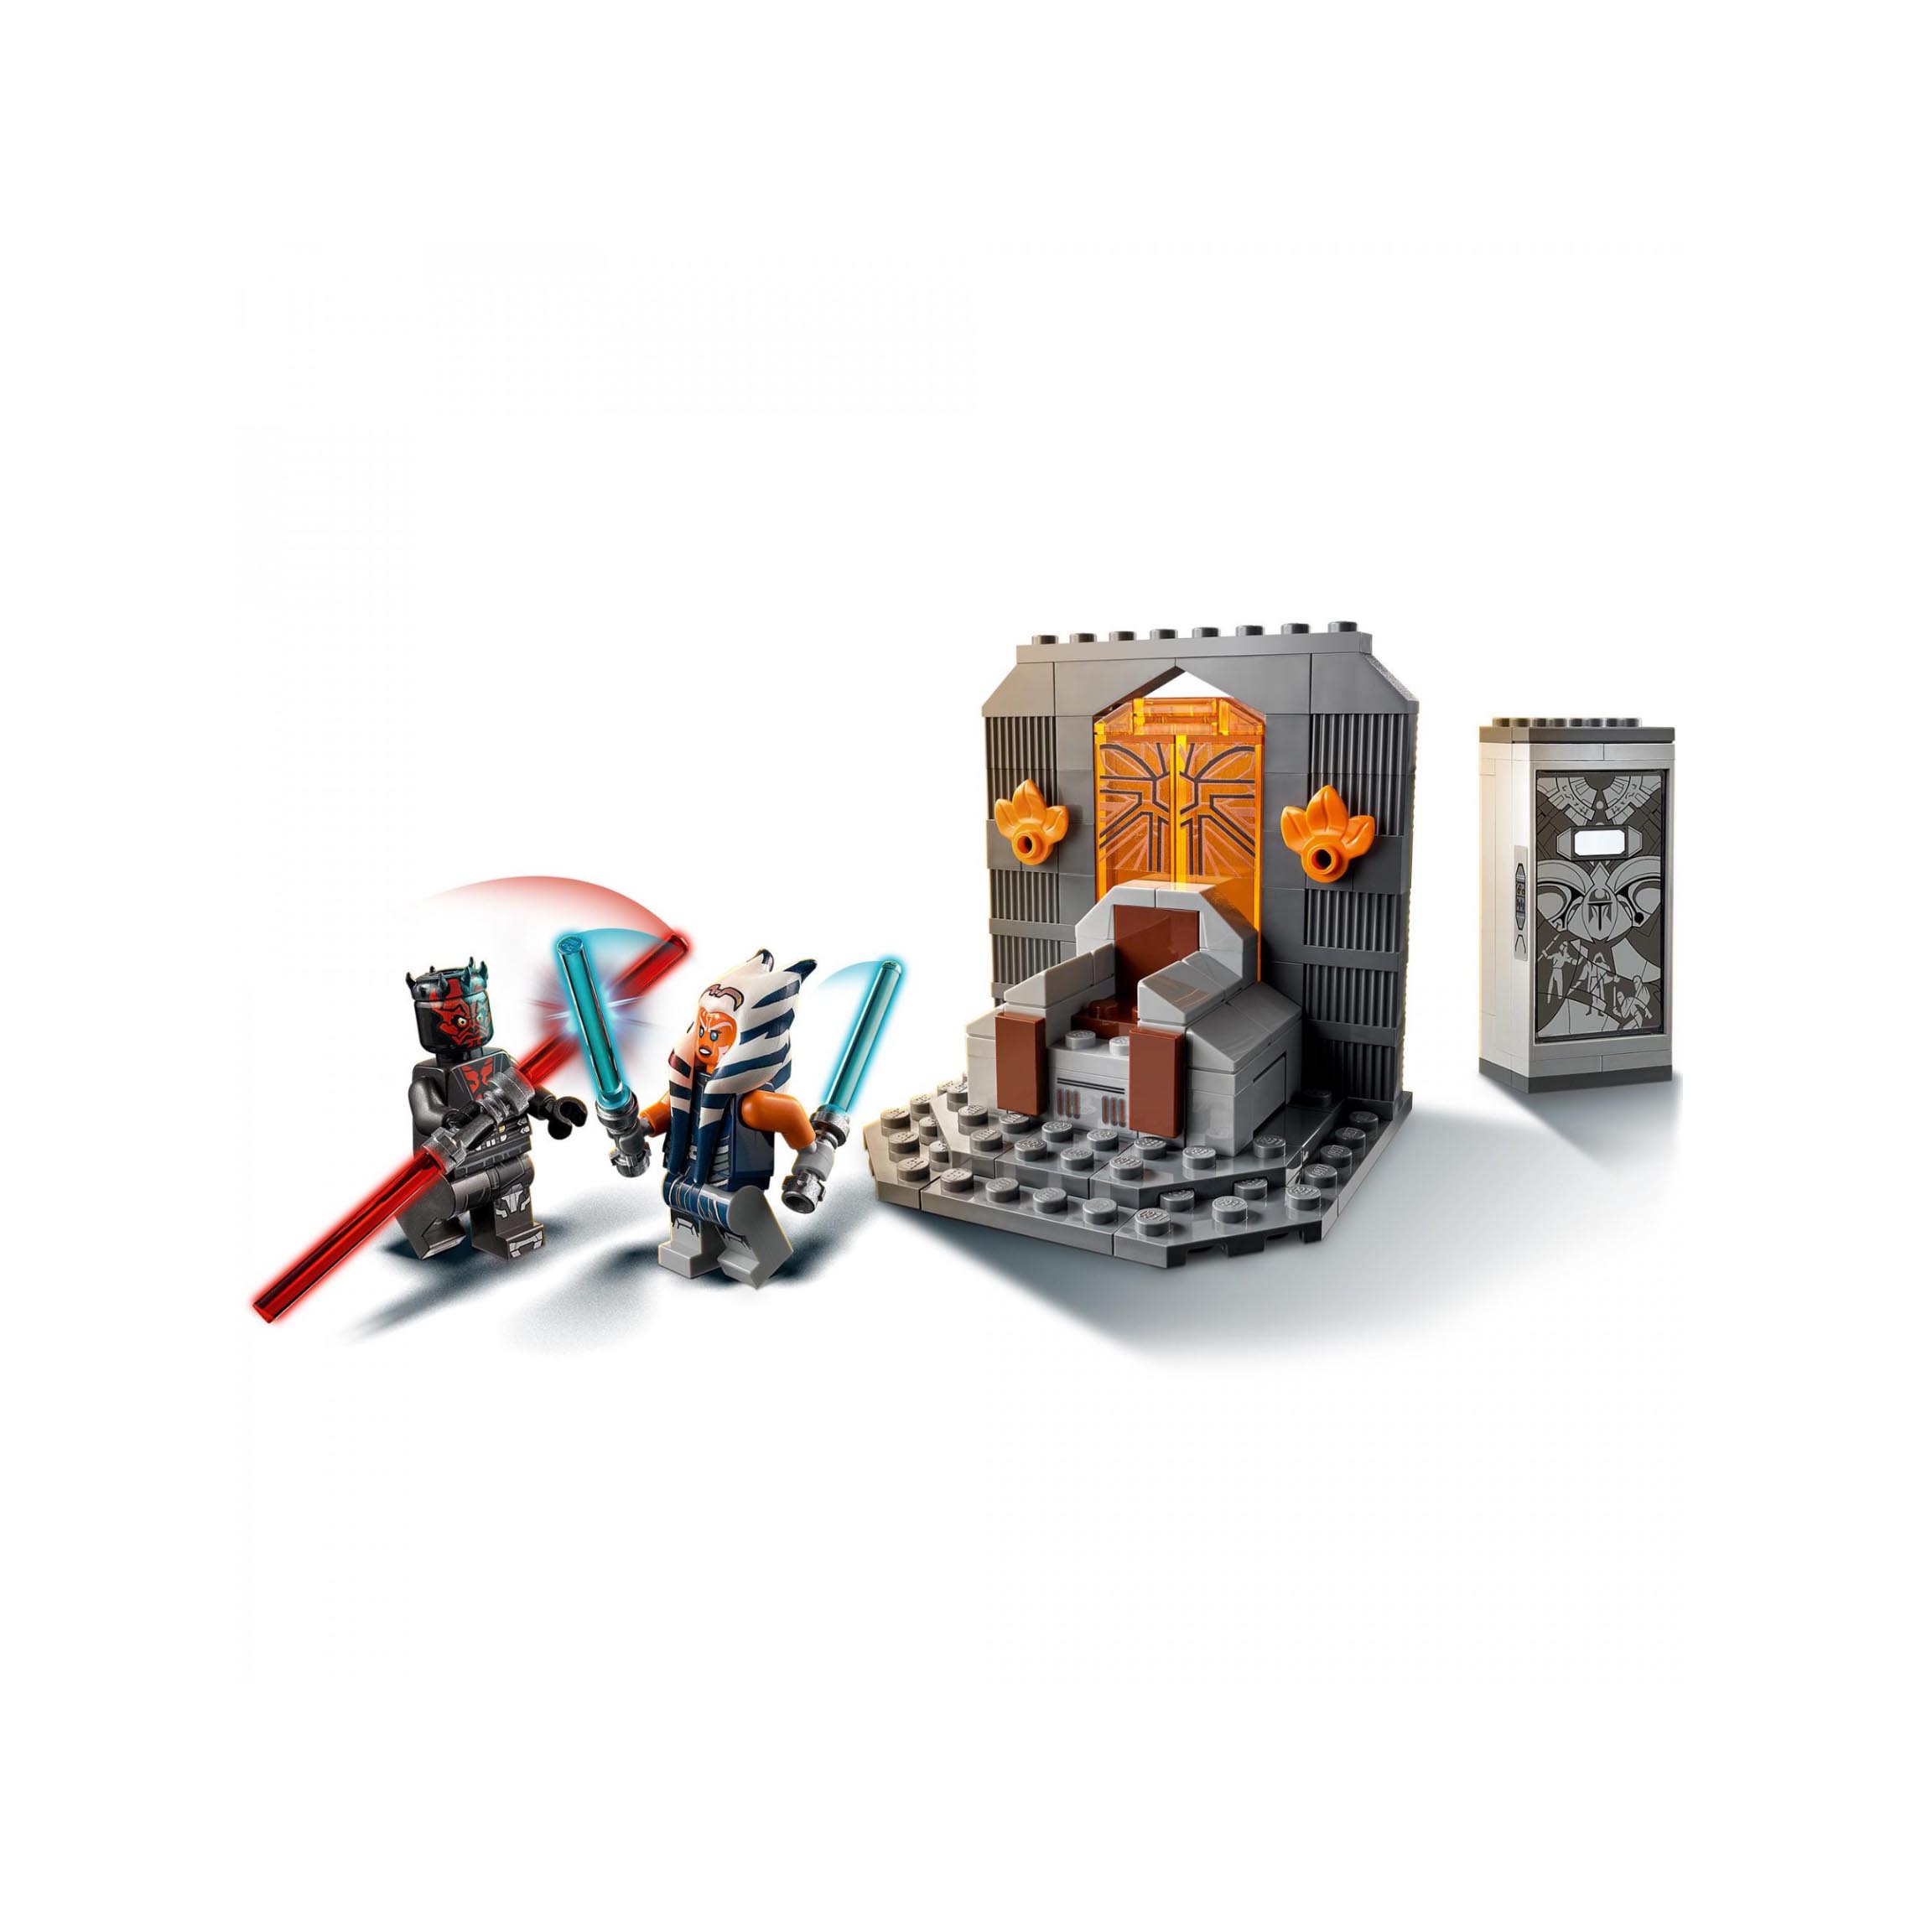 LEGO Star Wars Duello su Mandalore, Set da Costruzione, Giocattoli per Bambini 7 75310, , large